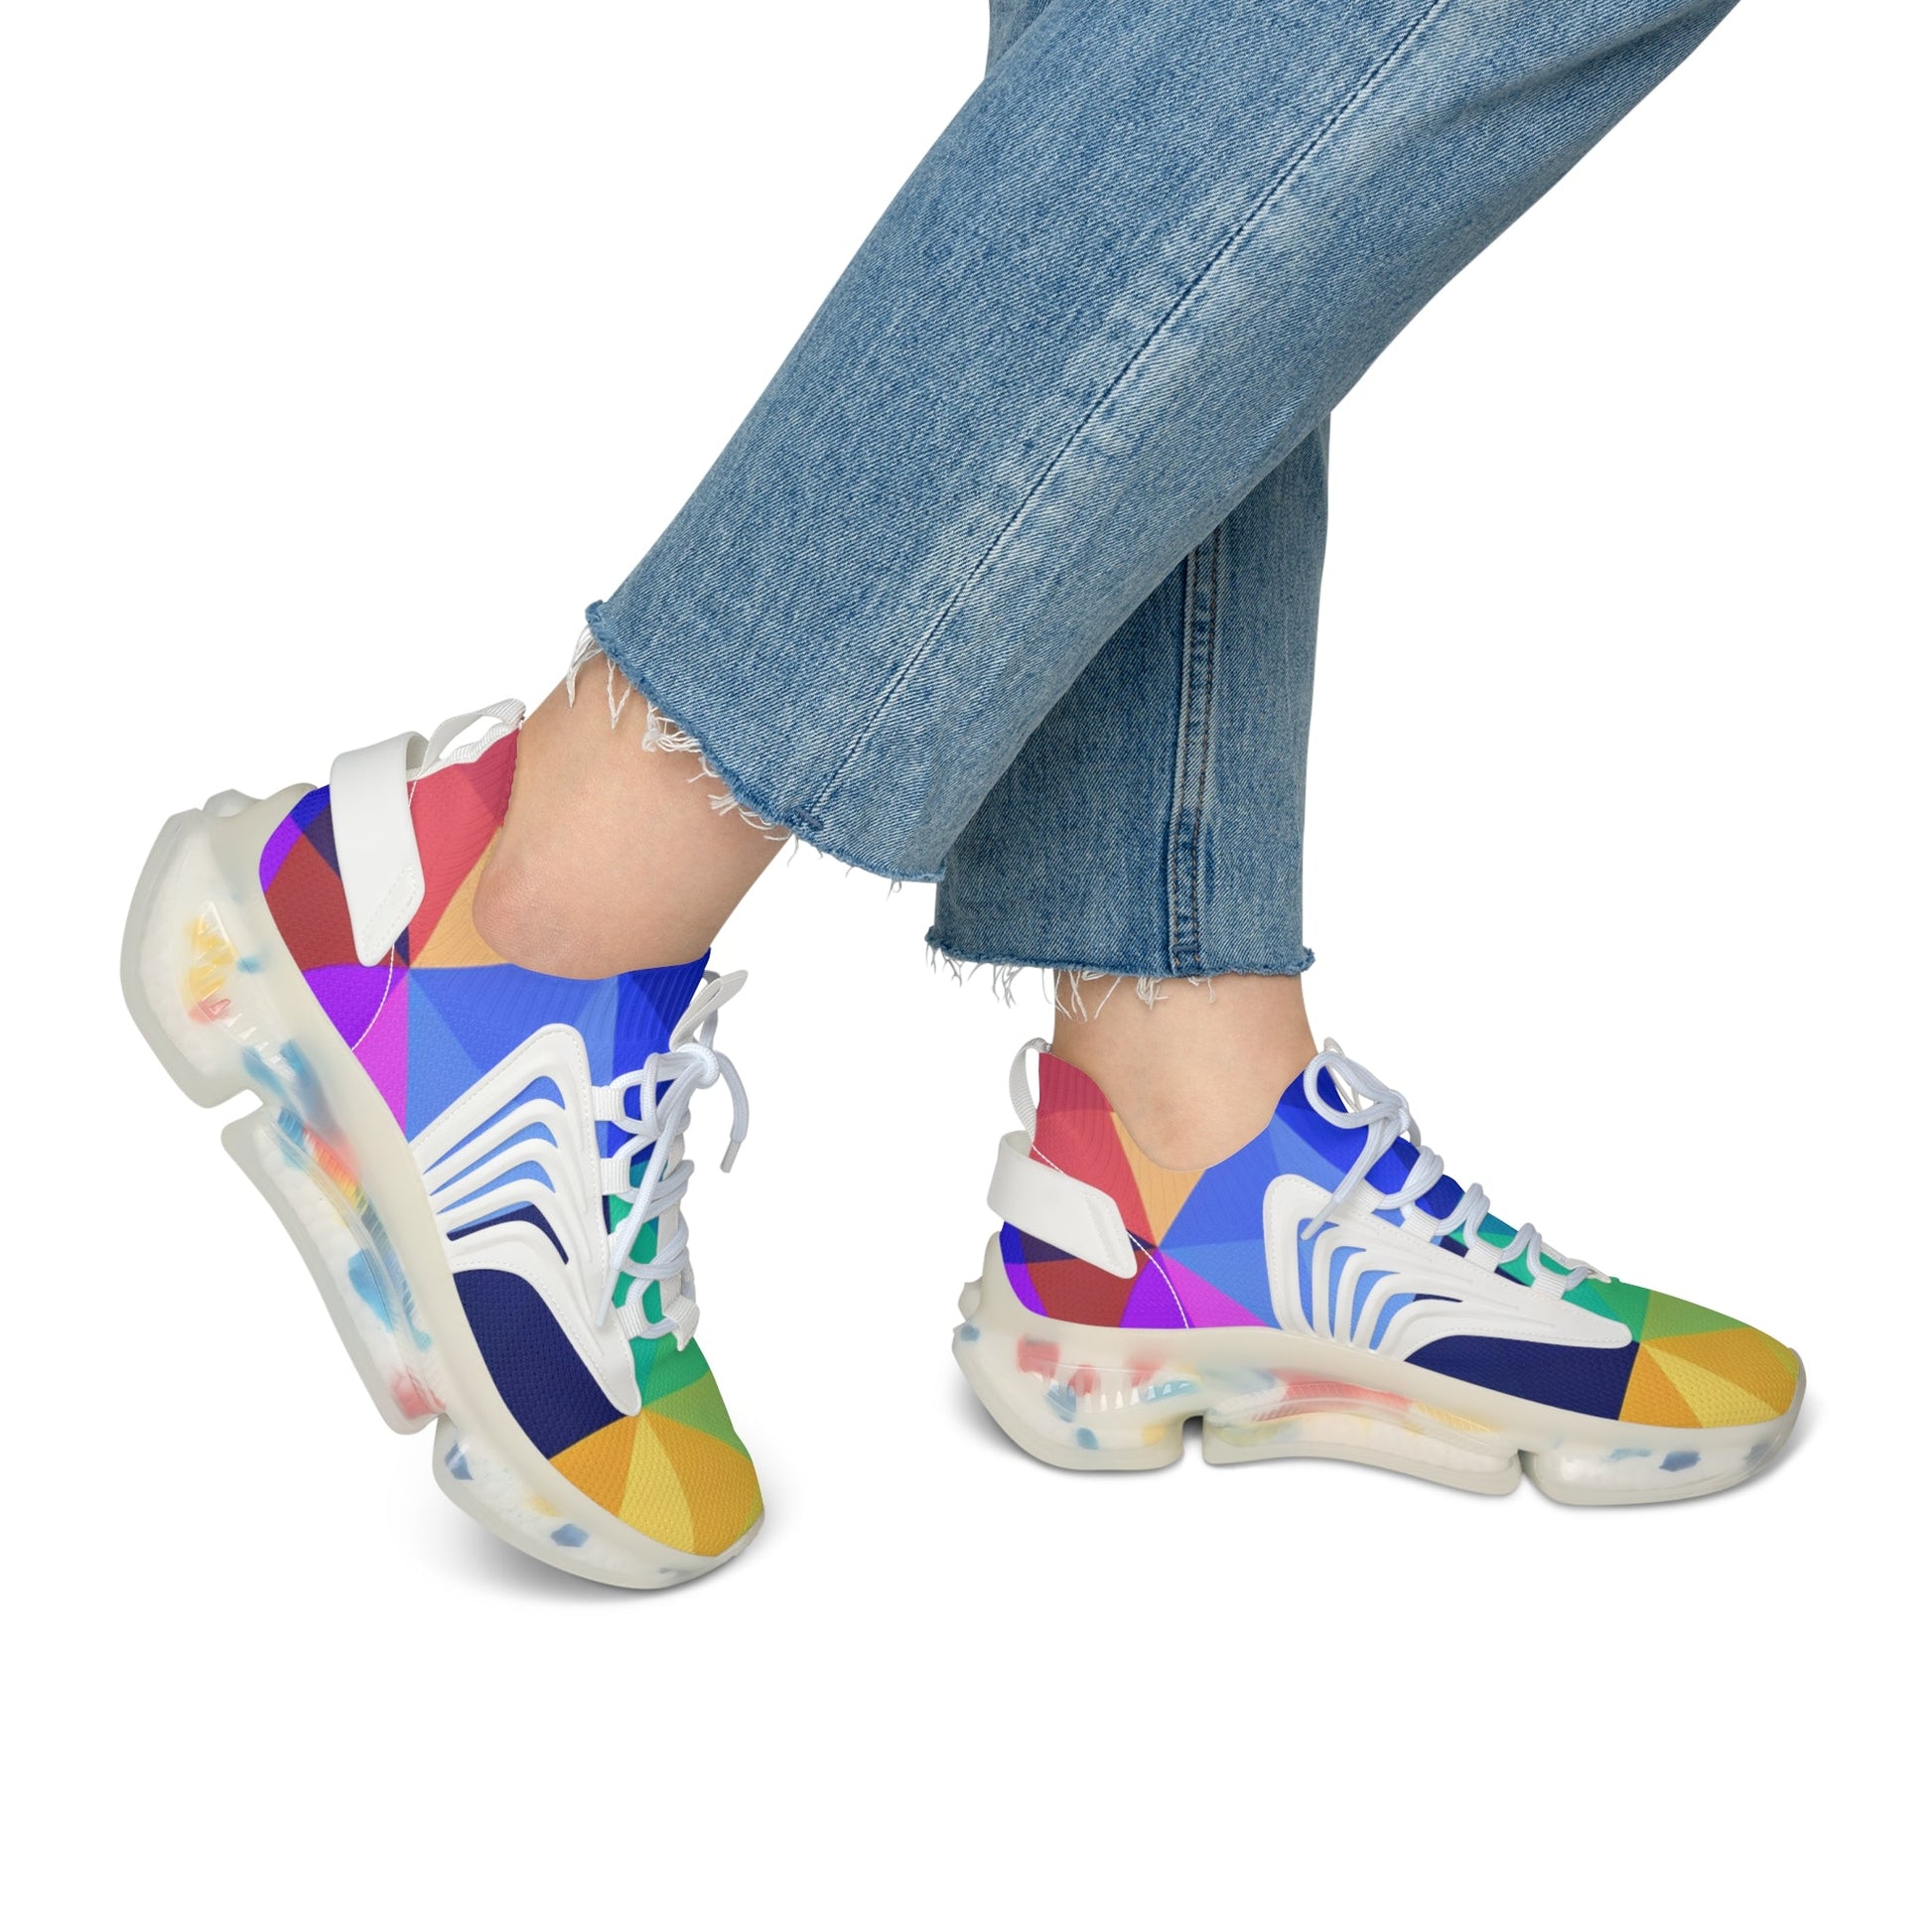 Shoes - Women's Mesh Sneakers